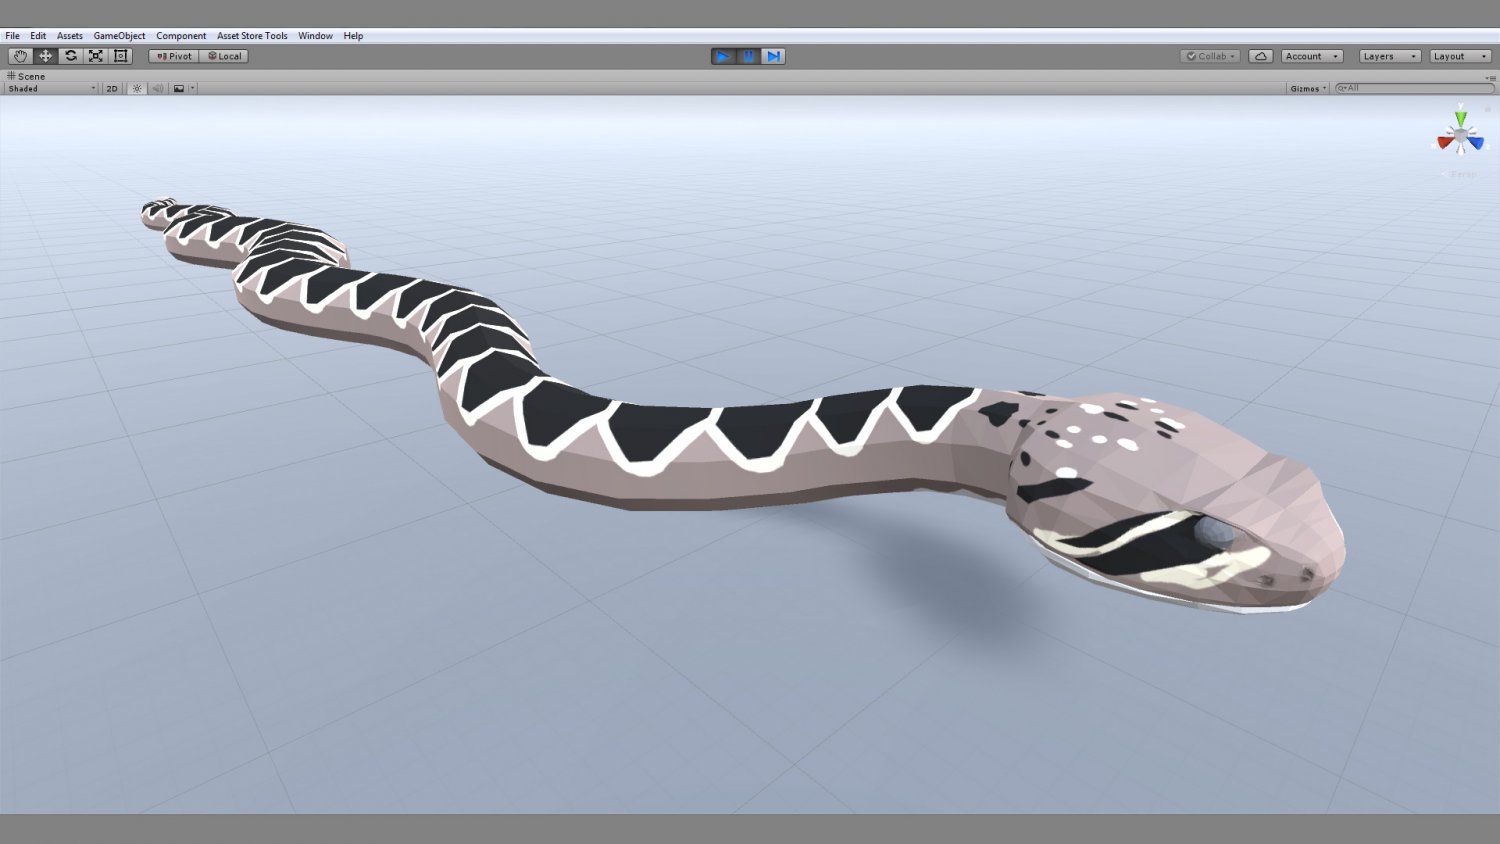 Snake (3D) - CLIP STUDIO ASSETS